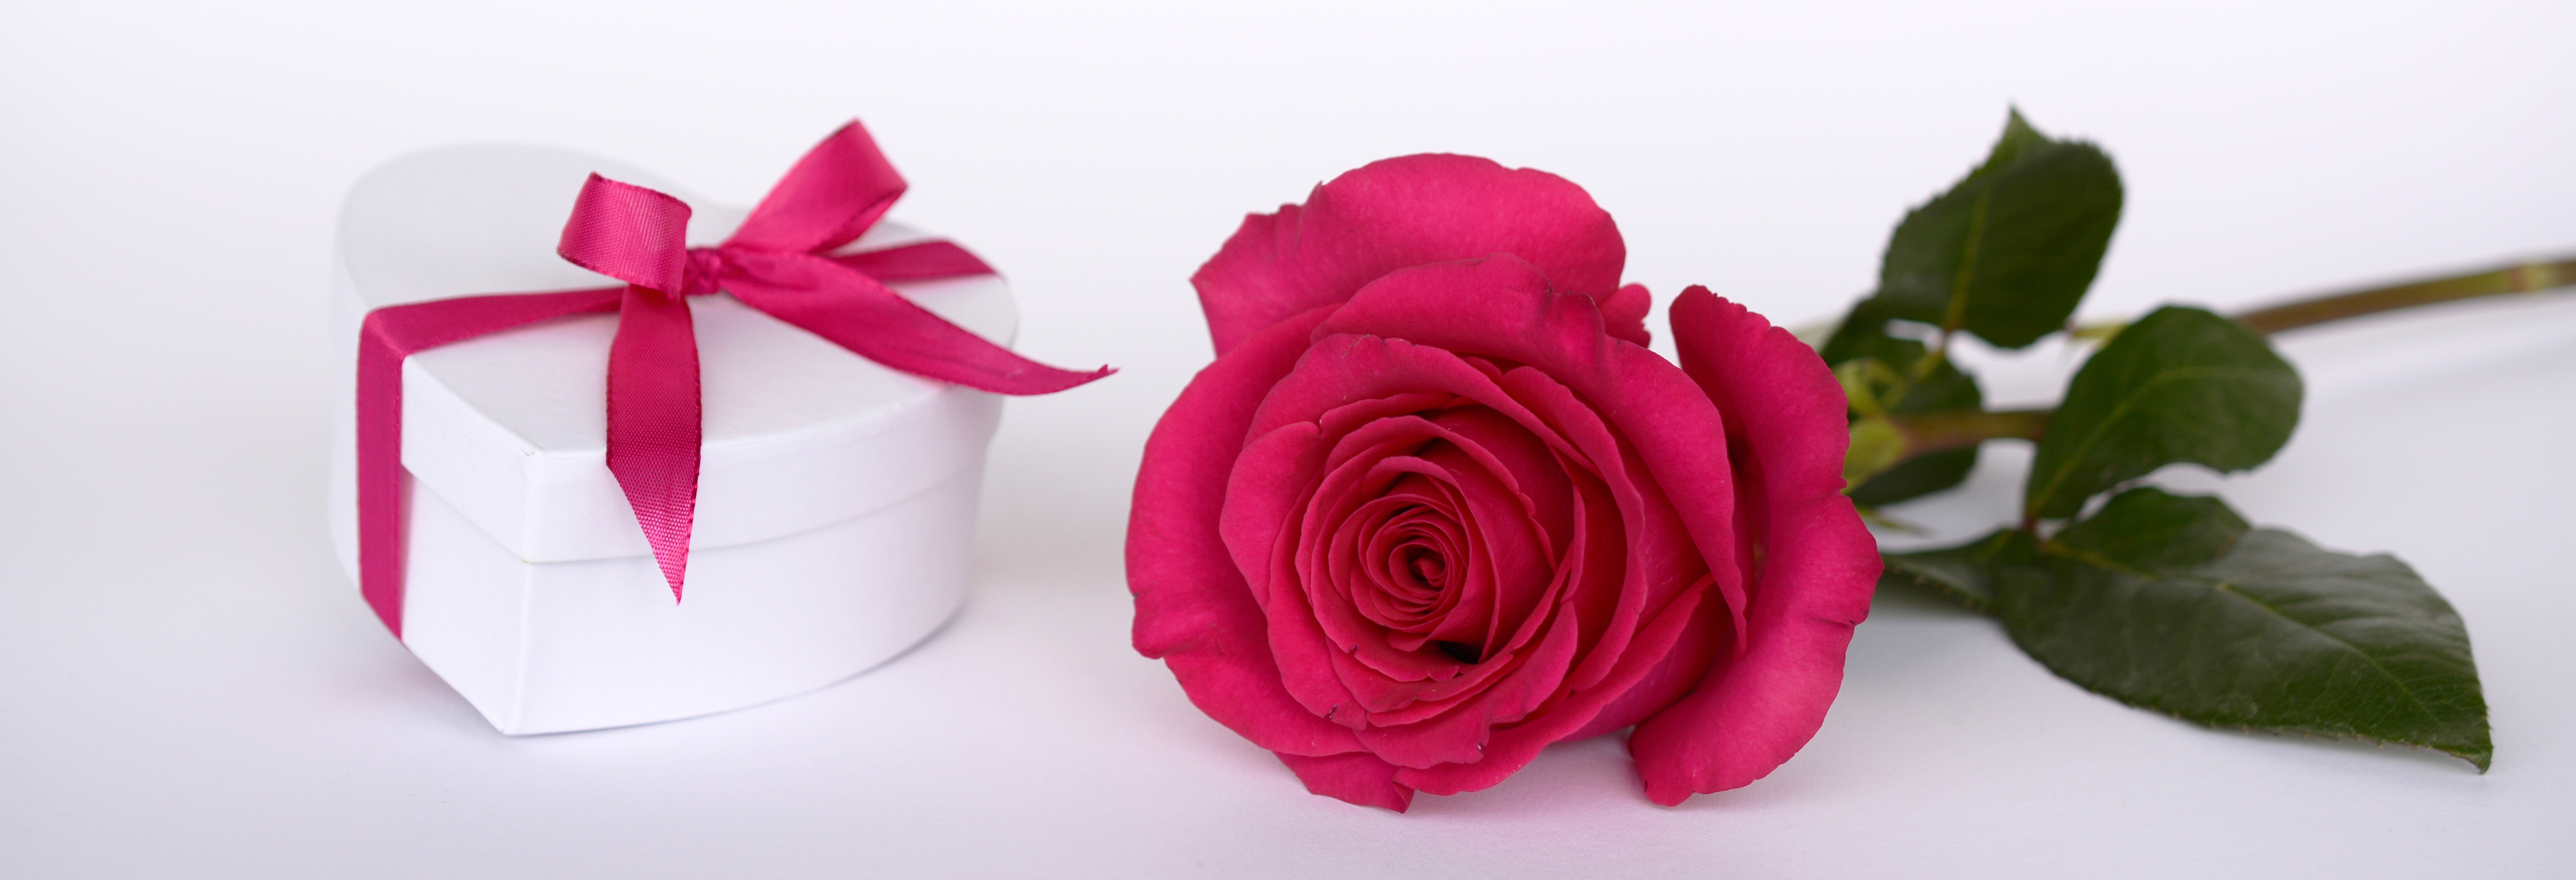 Бесплатное фото Белая коробка в виде сердечка с розовой розой